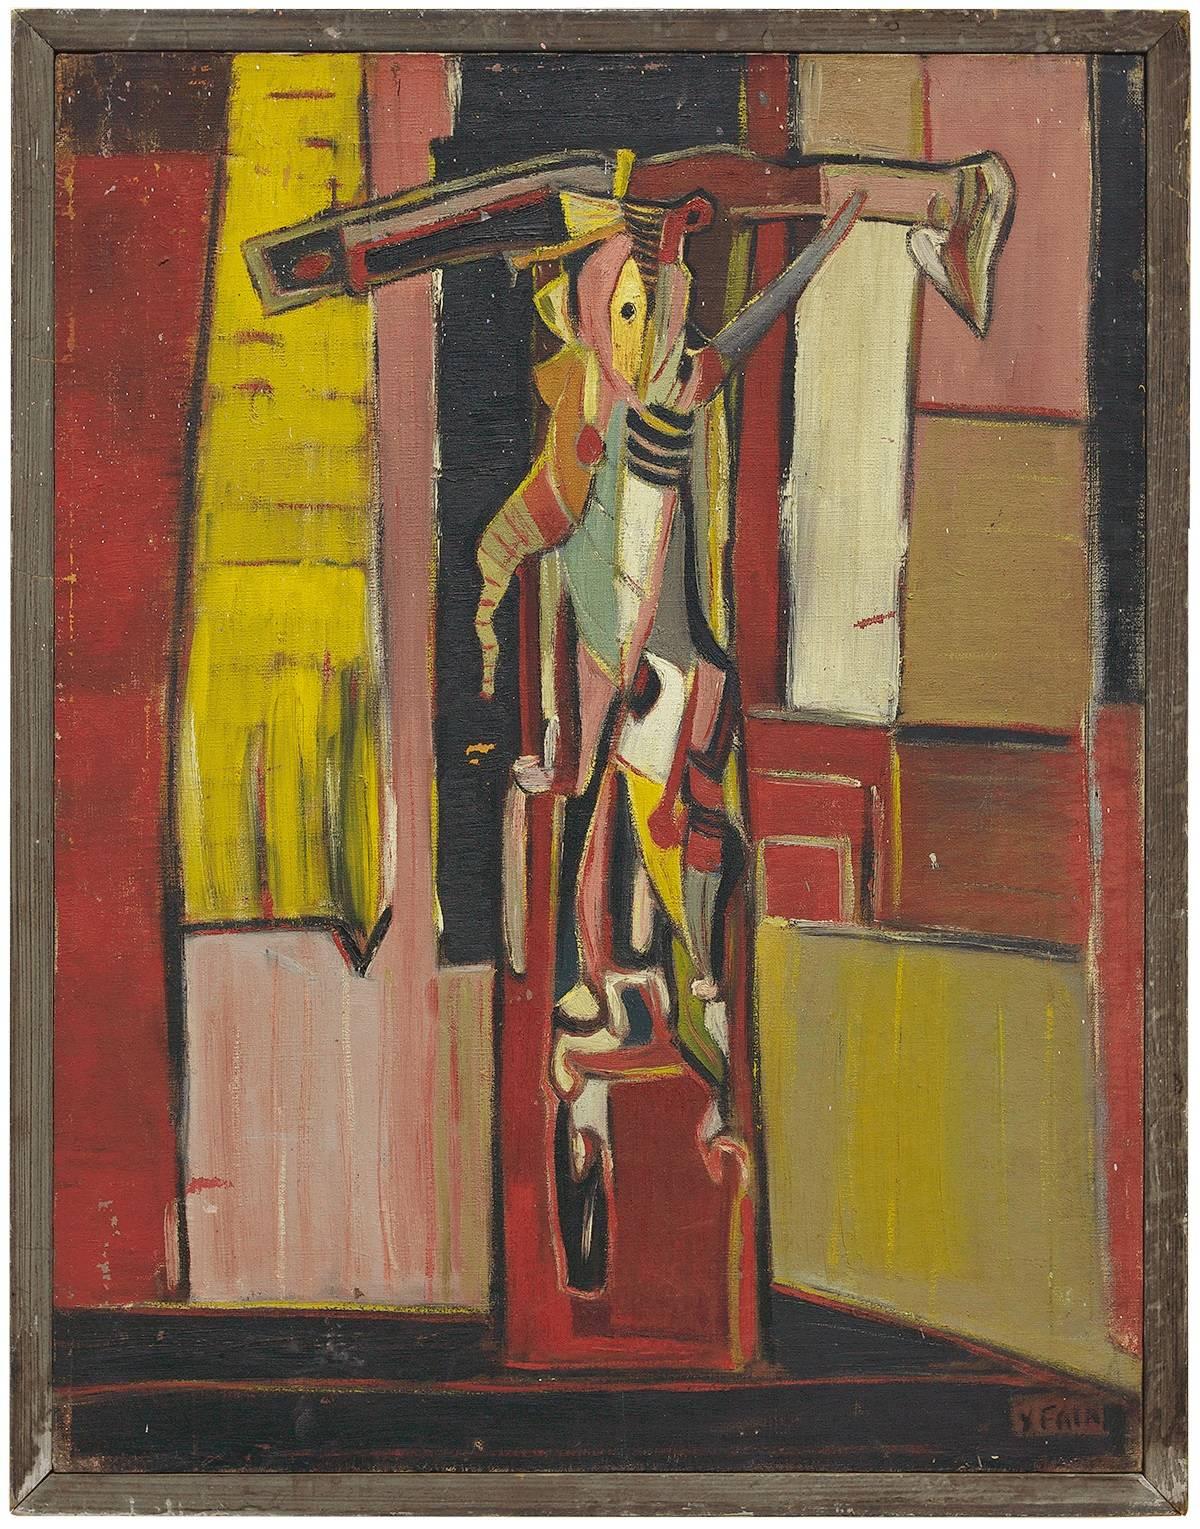 Importante peinture à l'huile expressionniste judaïque « The Victim » d'avant-garde, 1947 